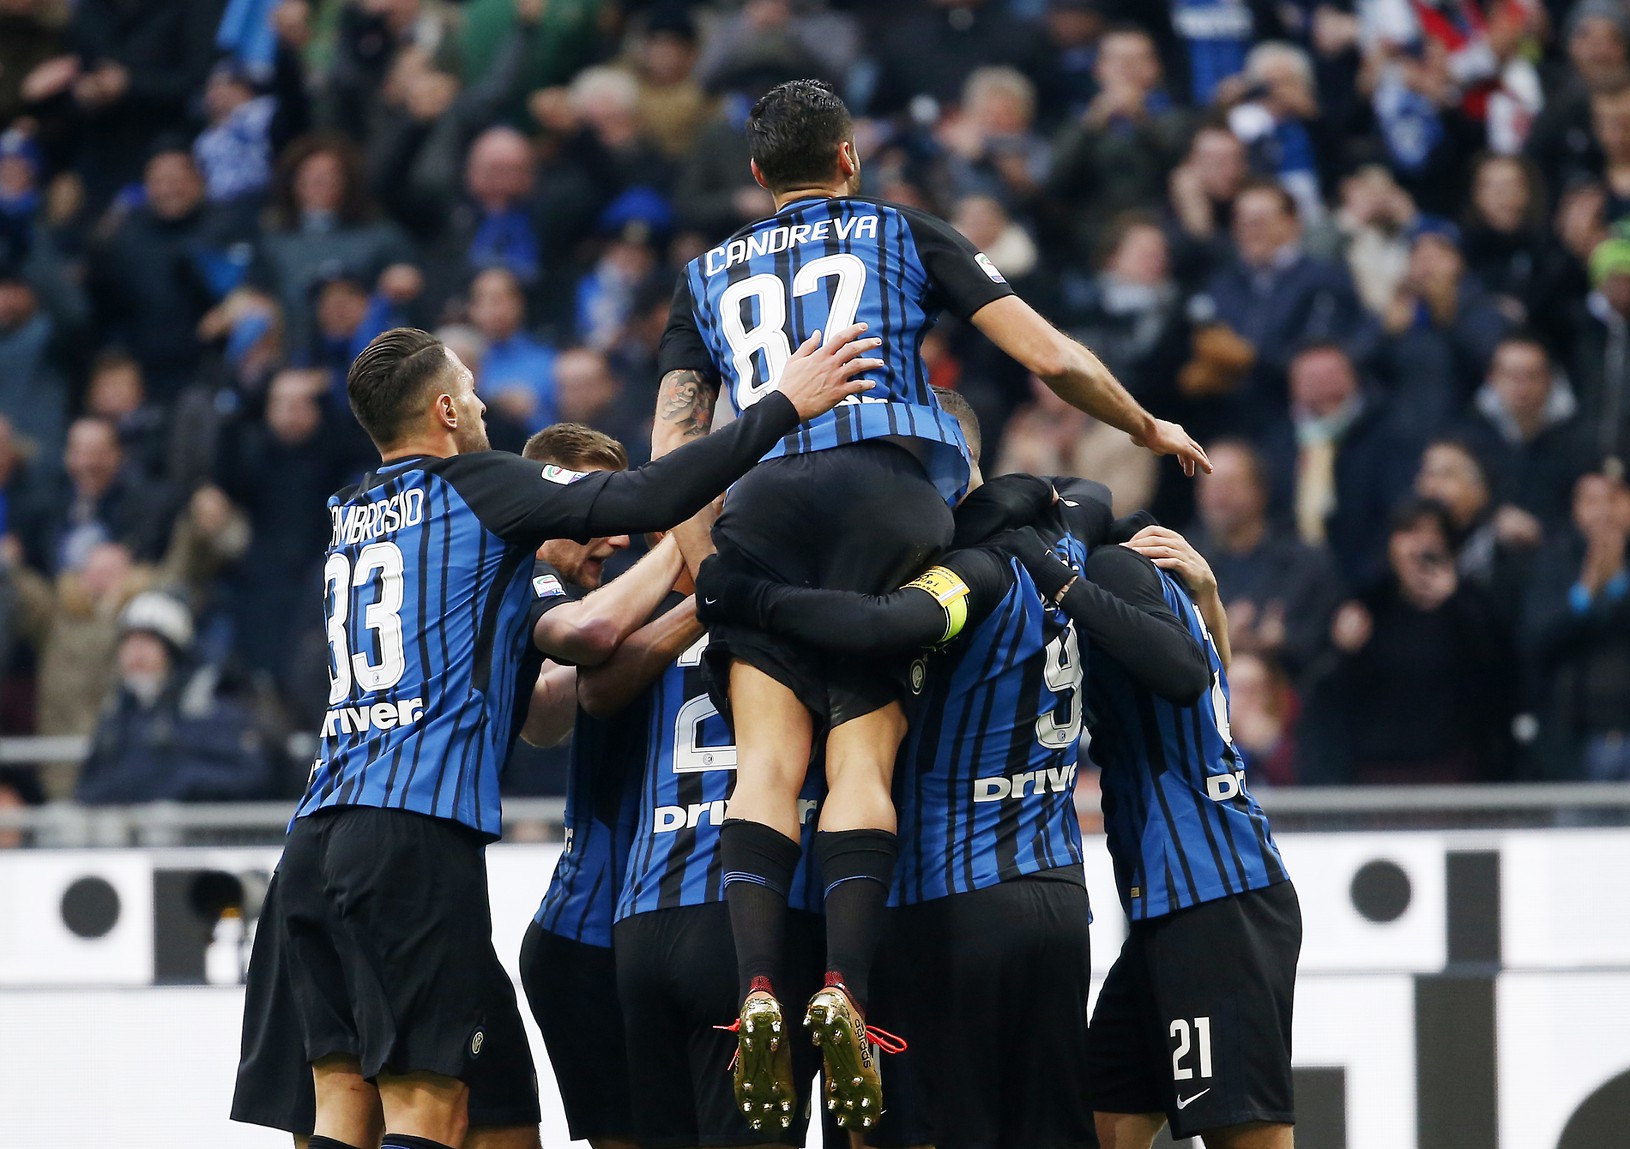 Hráči Interu oslavujú gól